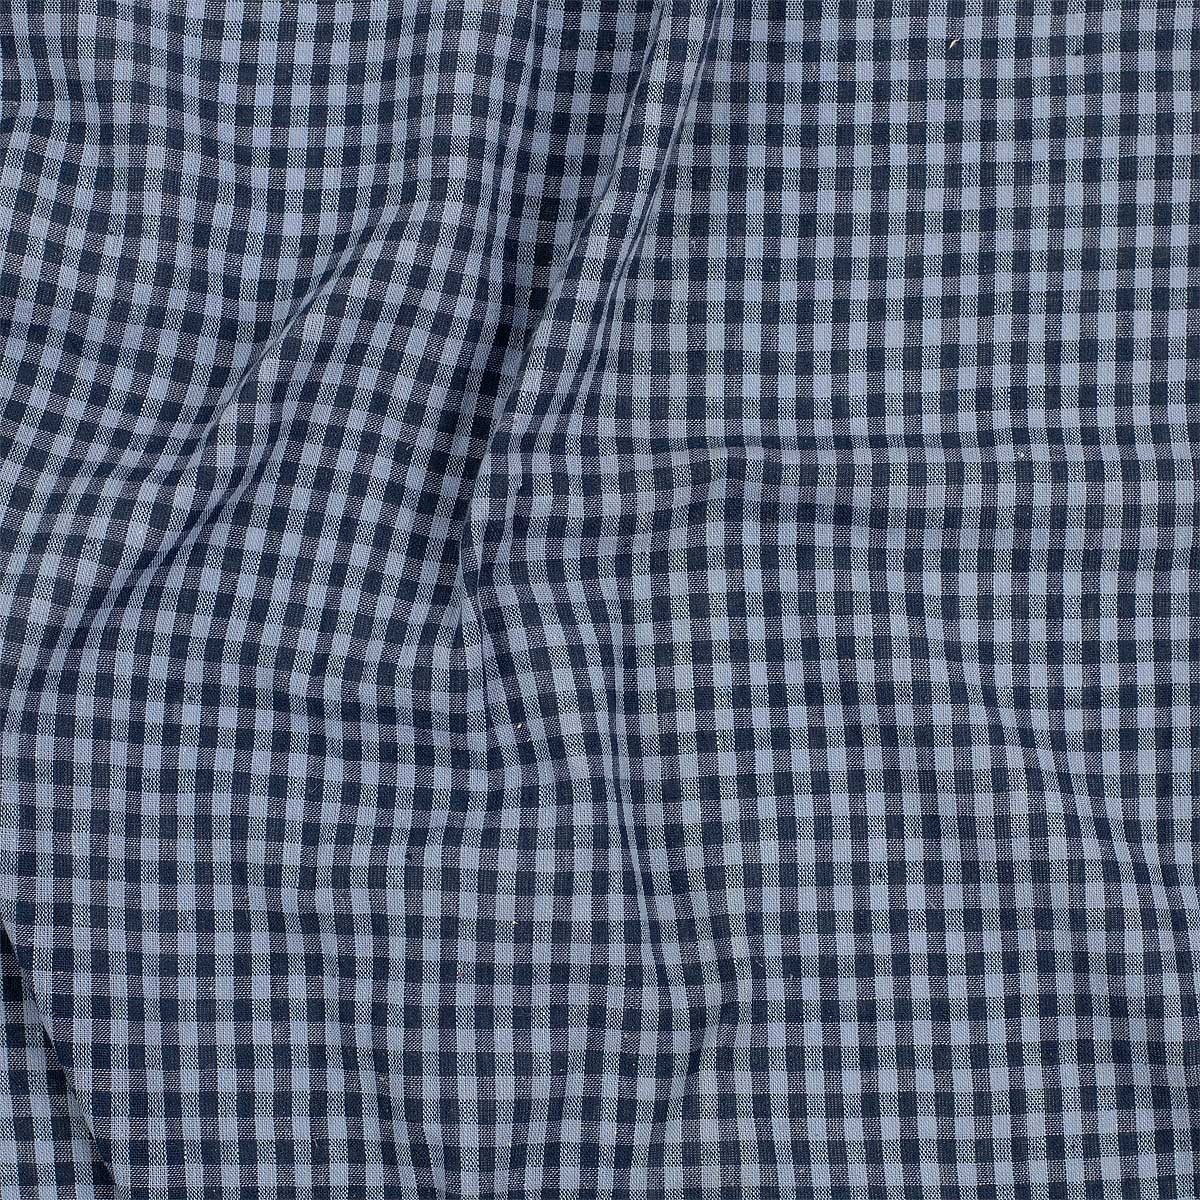 ECO CHECK Fabric, blue/blue